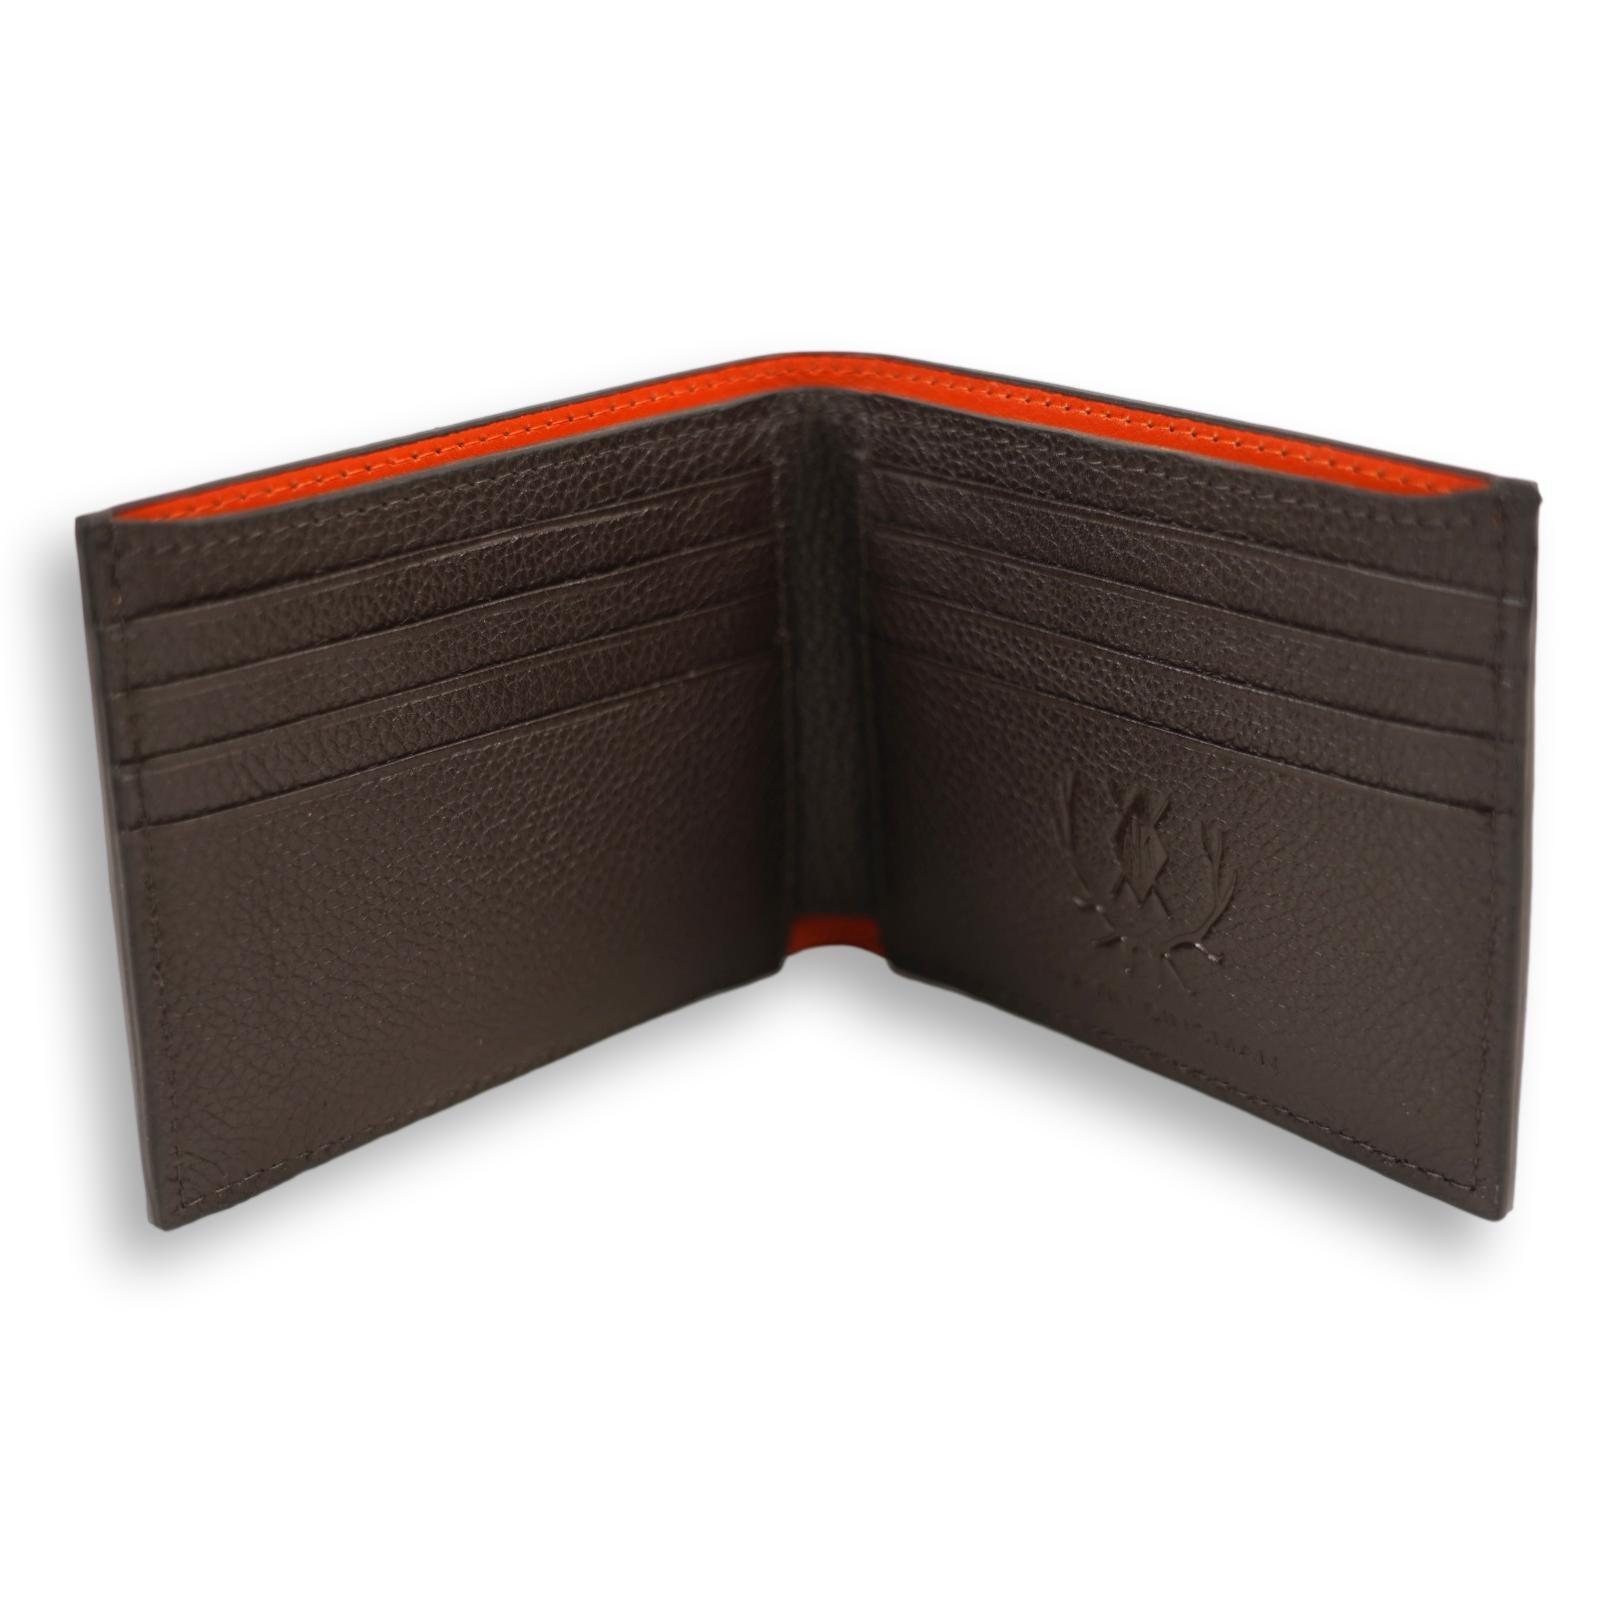 Leather Billfold Wallet